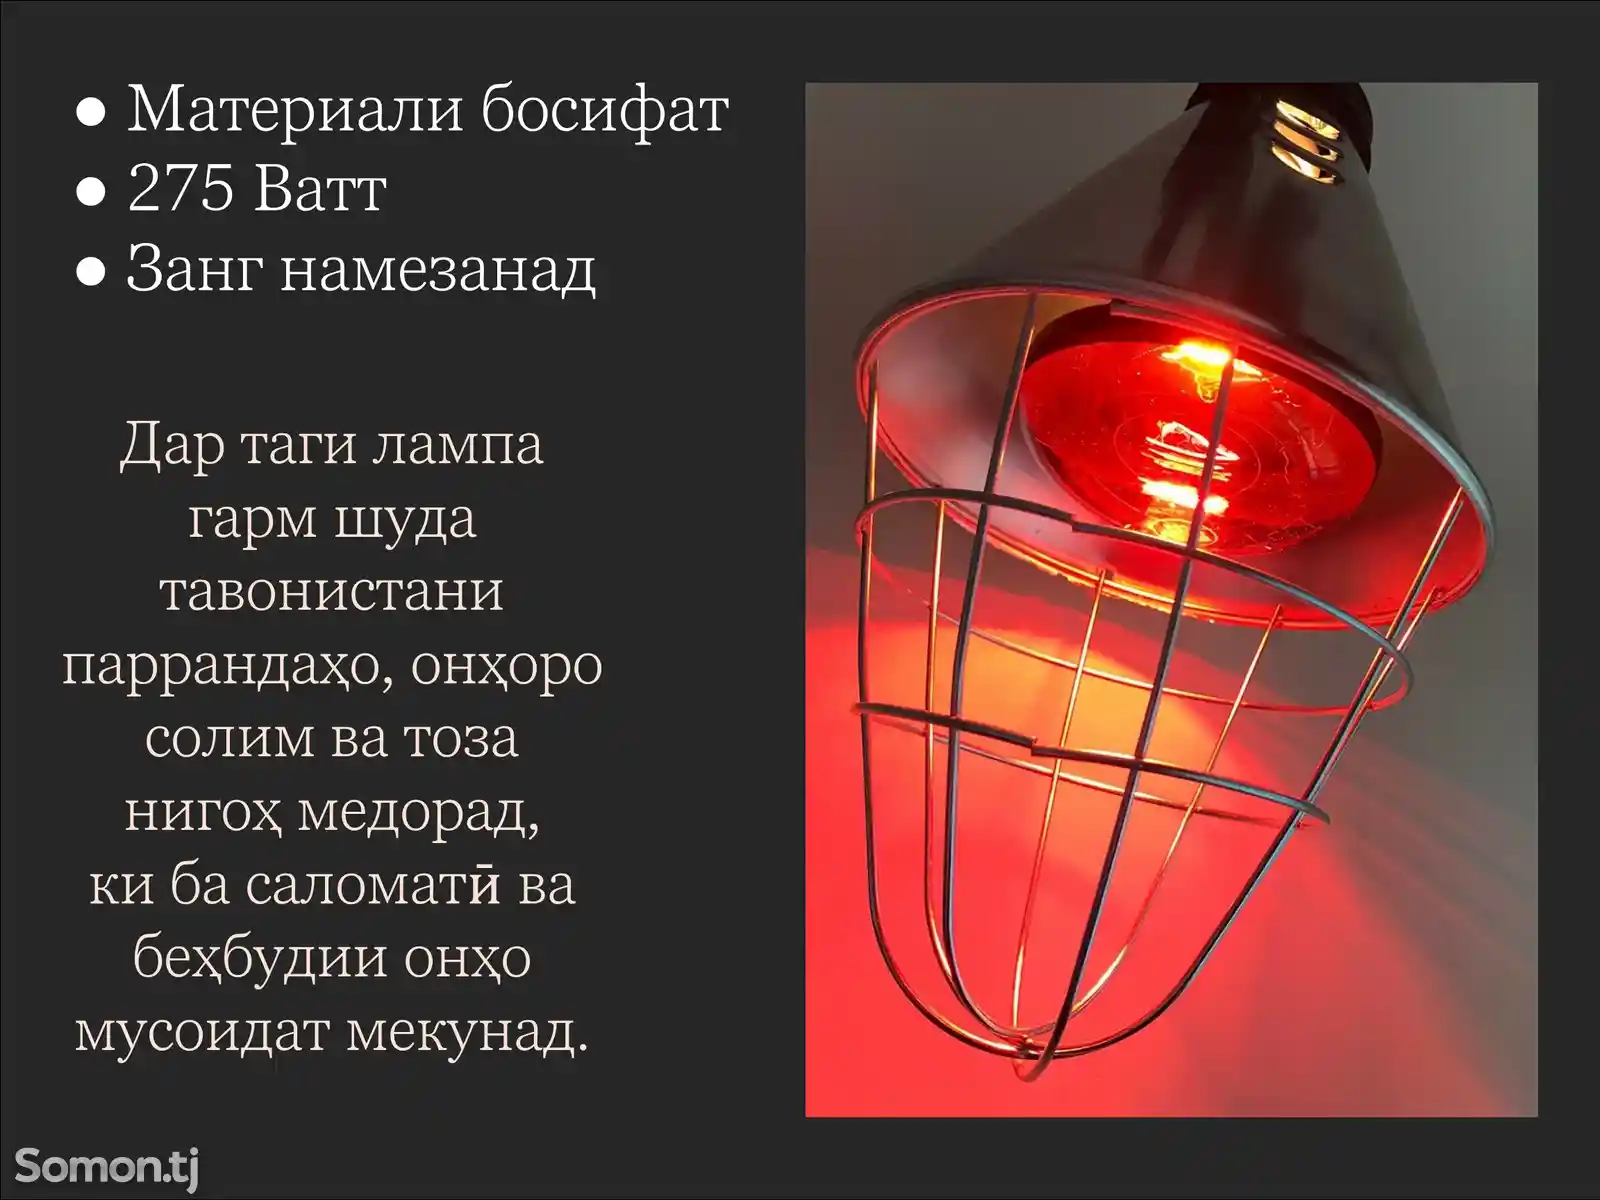 Инфракрасная лампа 275Ватт-2